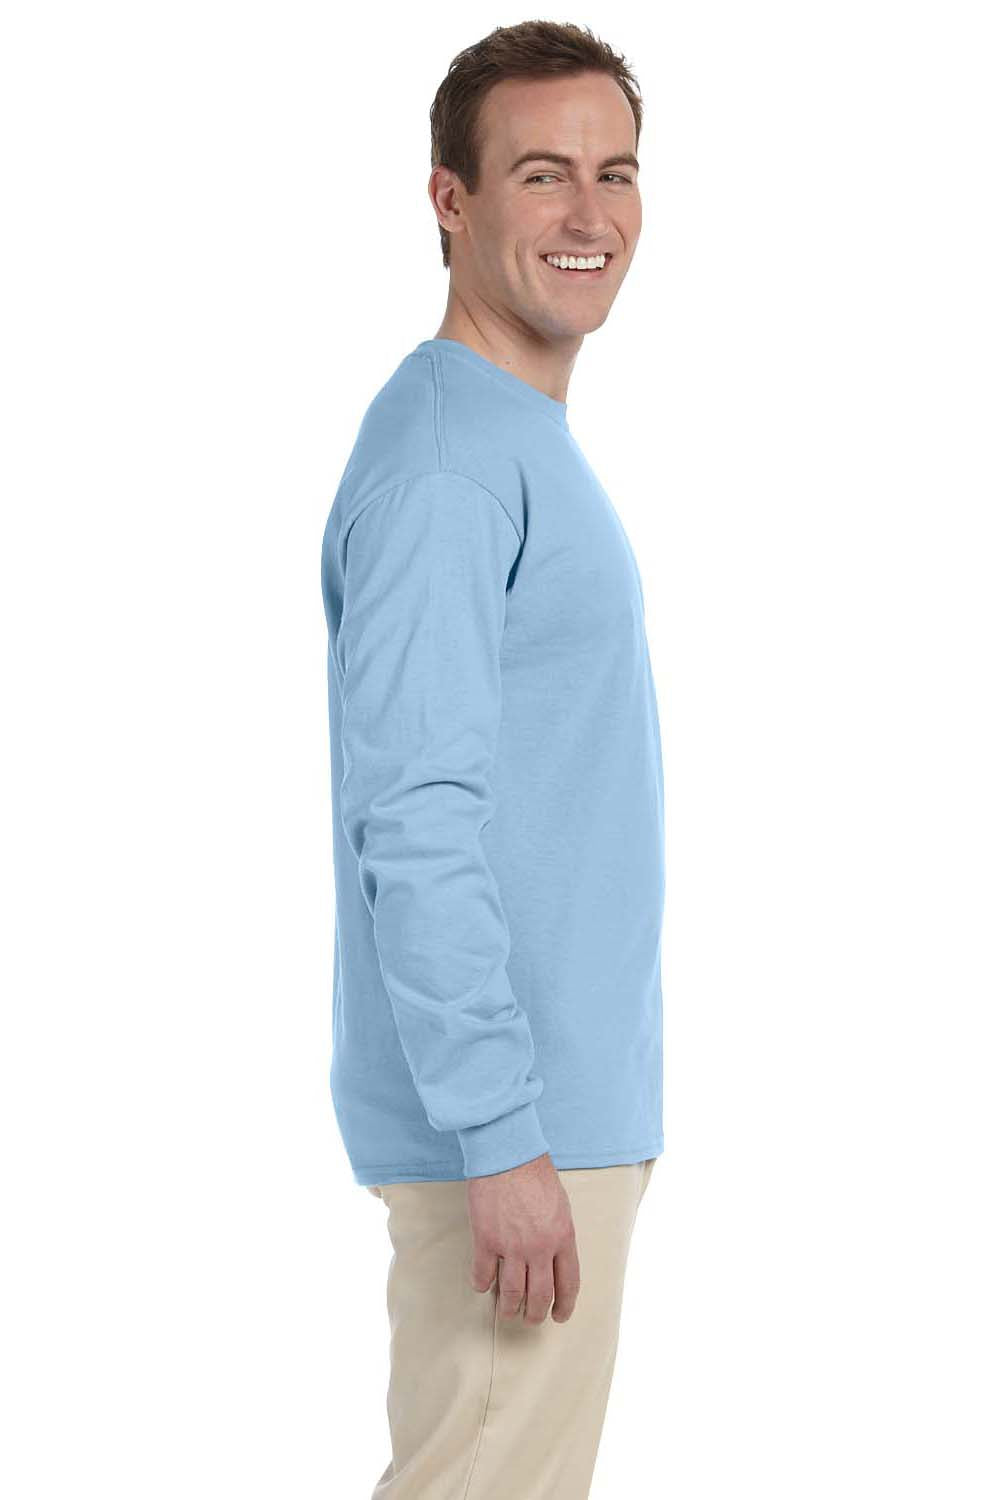 Gildan G240 Mens Ultra Long Sleeve Crewneck T-Shirt Light Blue Side